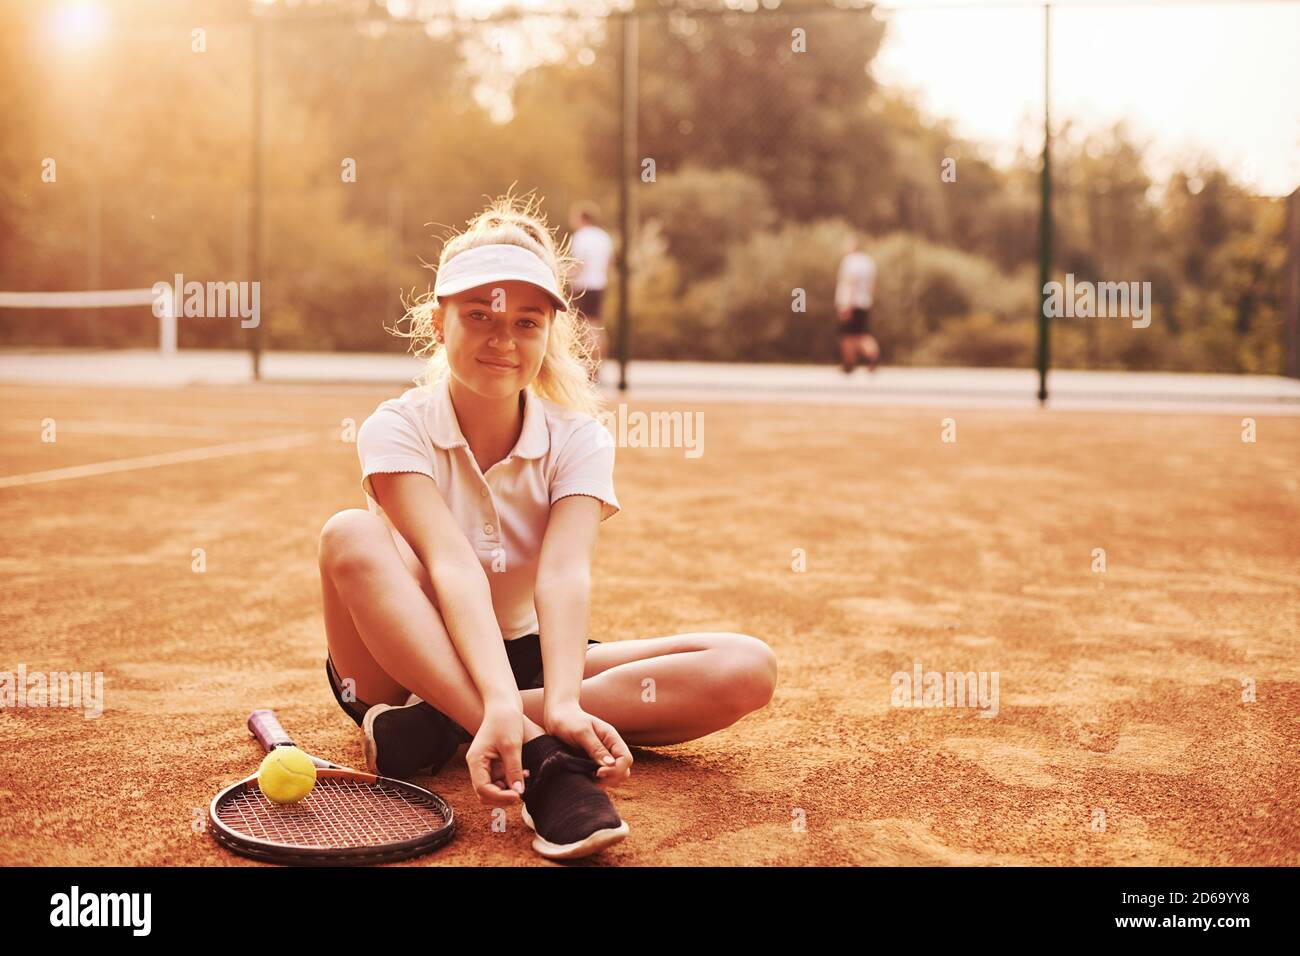 Repose sur le sol. Une jeune joueuse de tennis en vêtements de sport se trouve sur le court à l'extérieur Banque D'Images